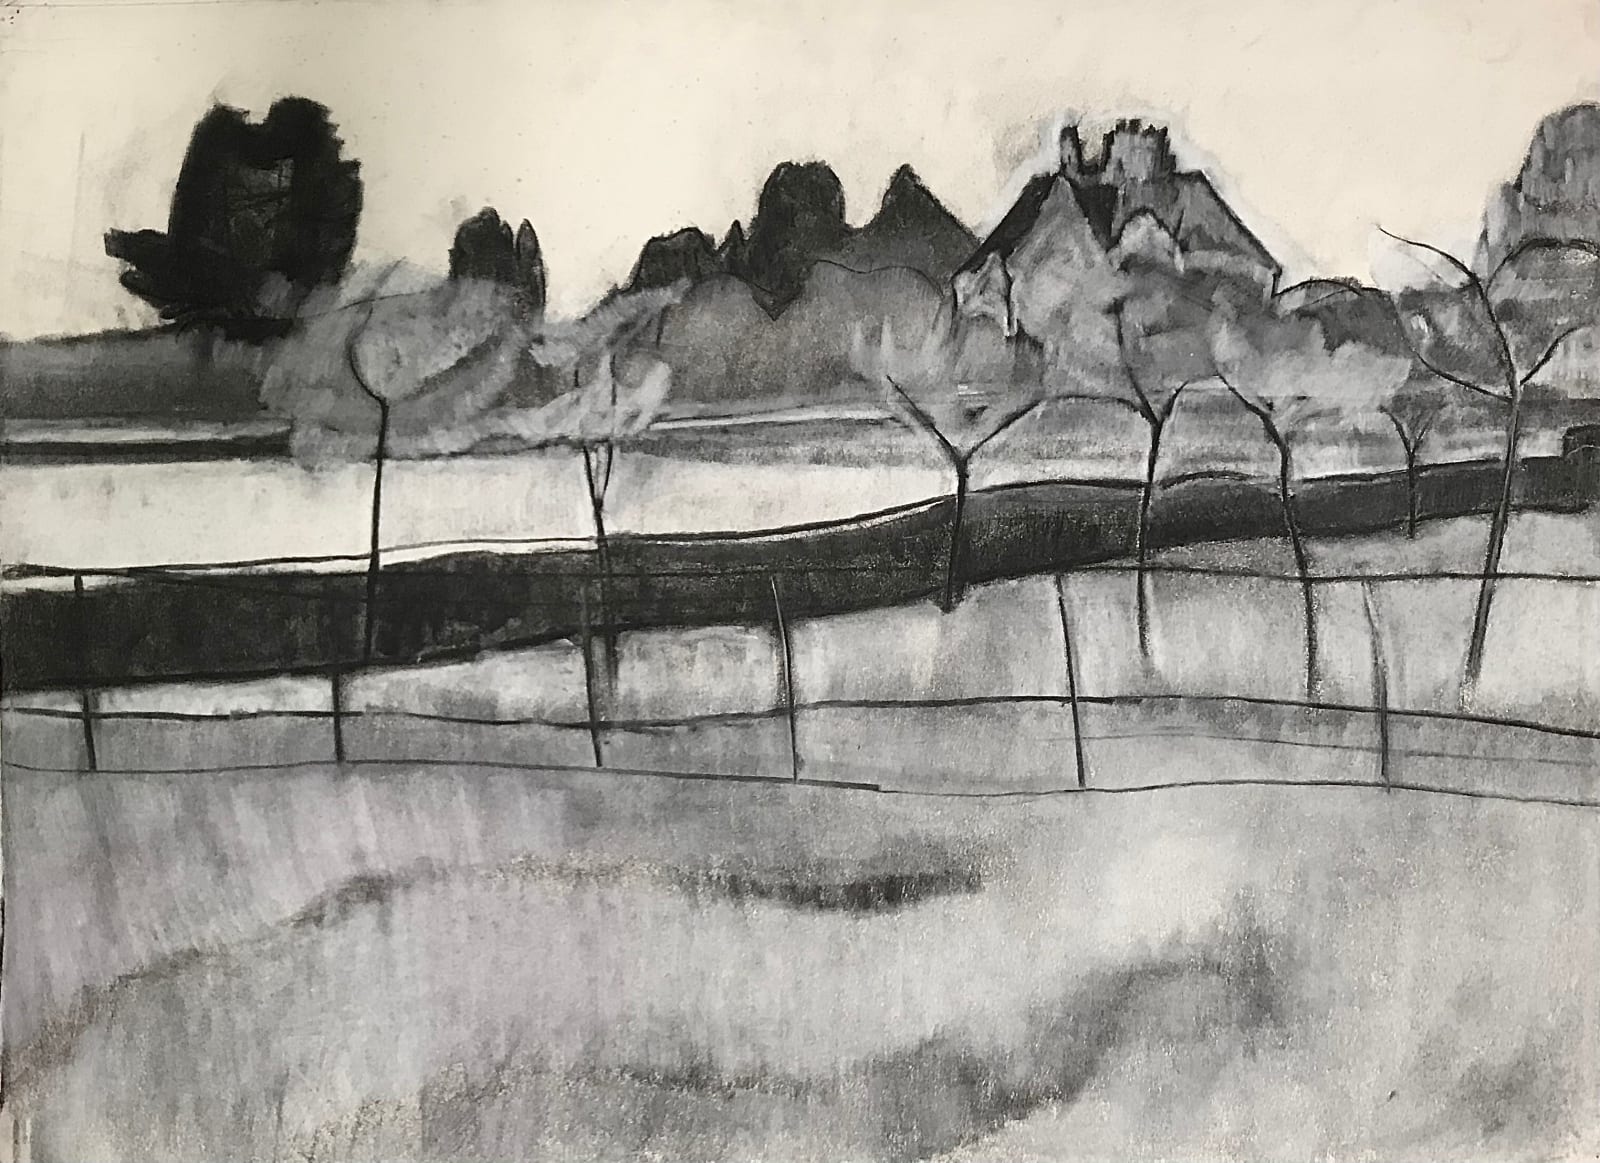 Dennis Creffield, Orchard, Charing Heath, 1954